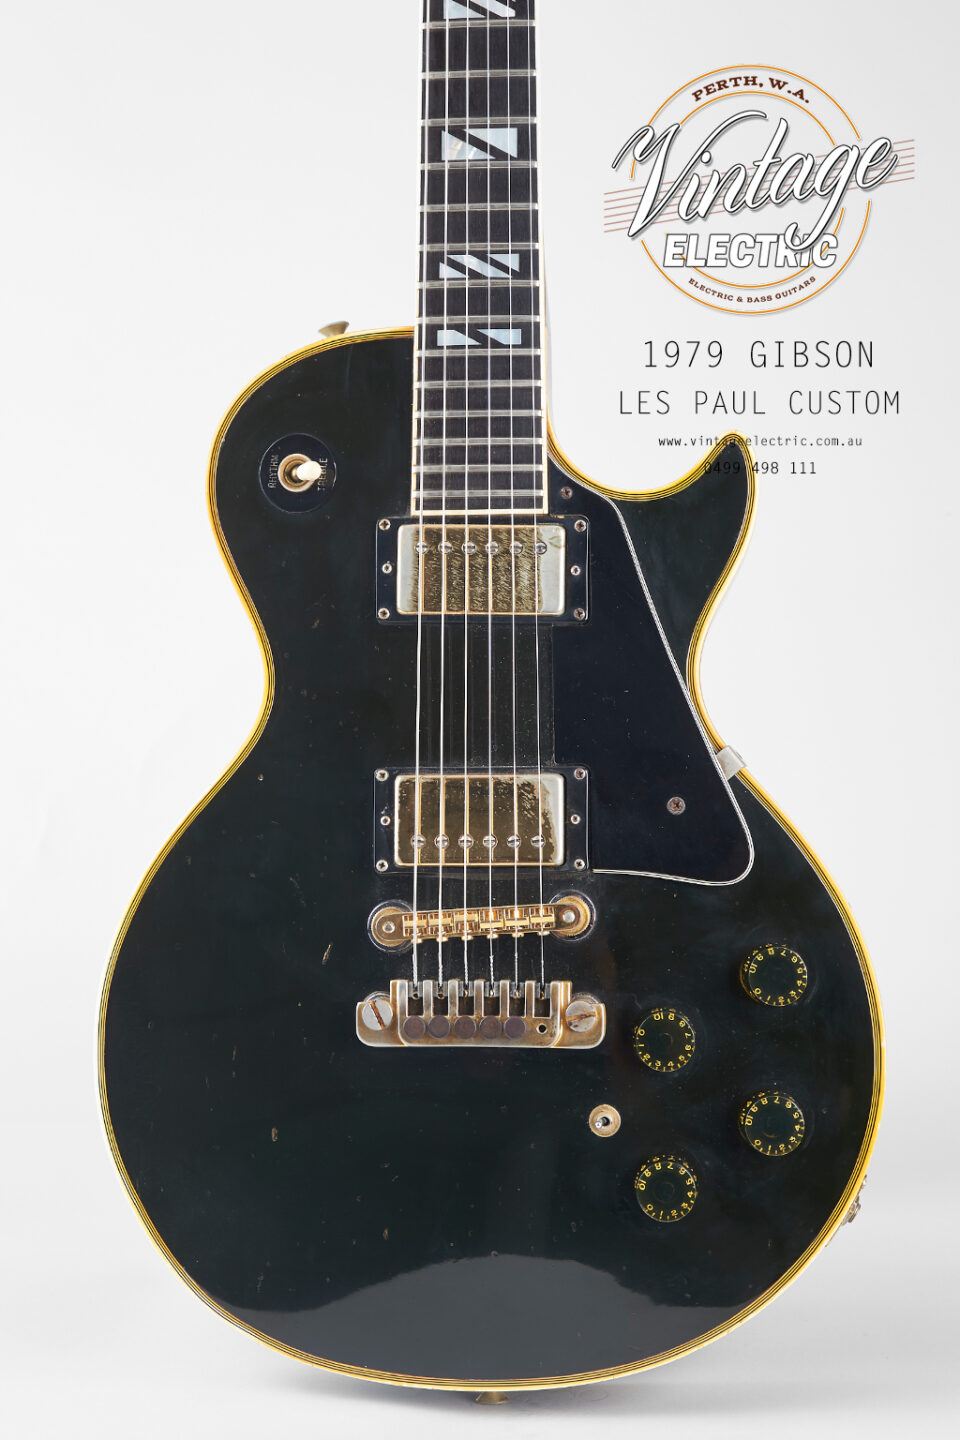 1979 Gibson Les Custom Body